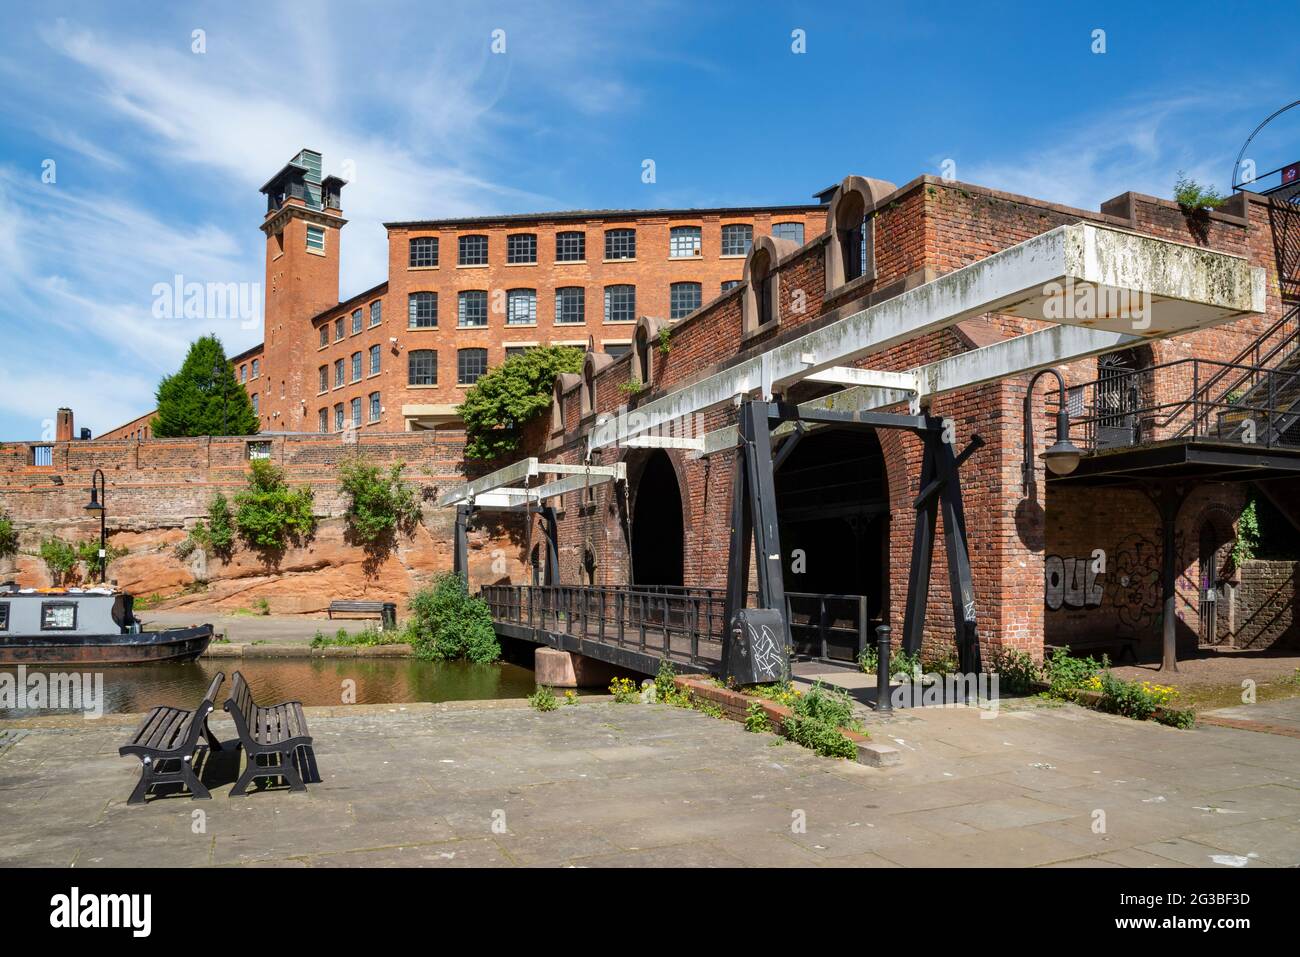 Entrepôt de épiciers, Castlefield, Manchester. Un site historique dans ce parc patrimonial urbain autour des canaux Bridgewater et Rochdale. Banque D'Images